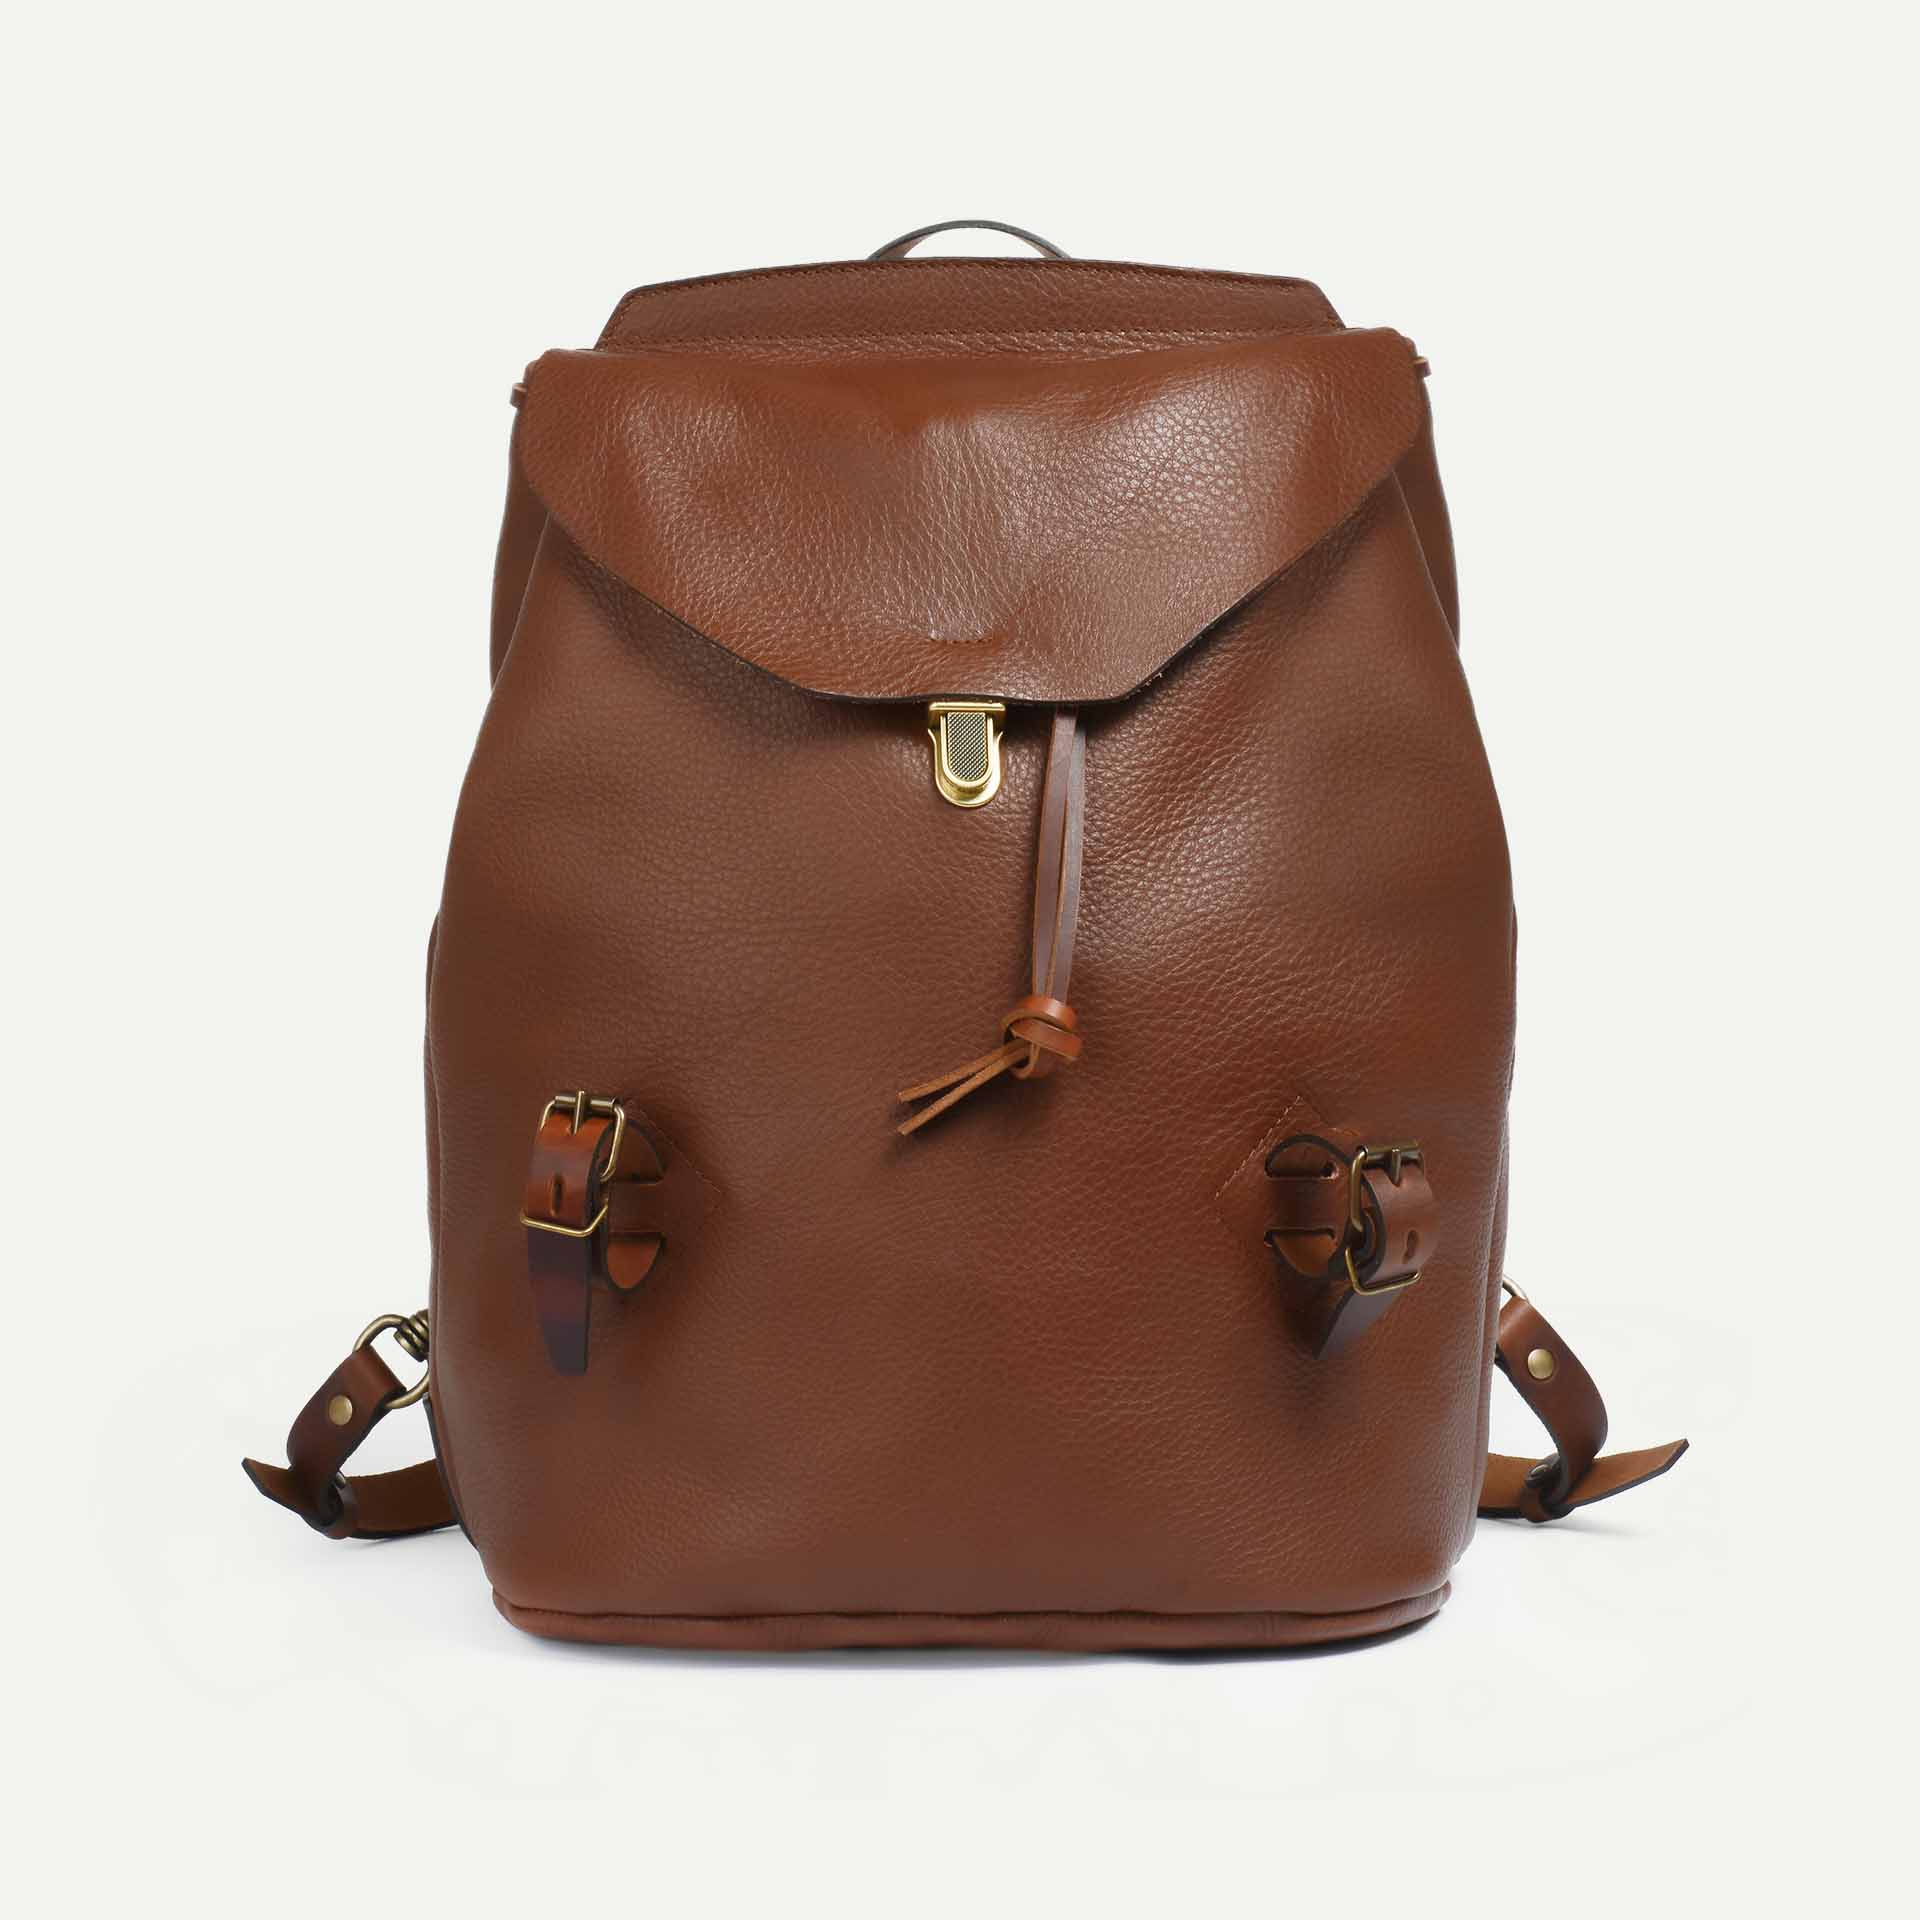 Zibeline backpack